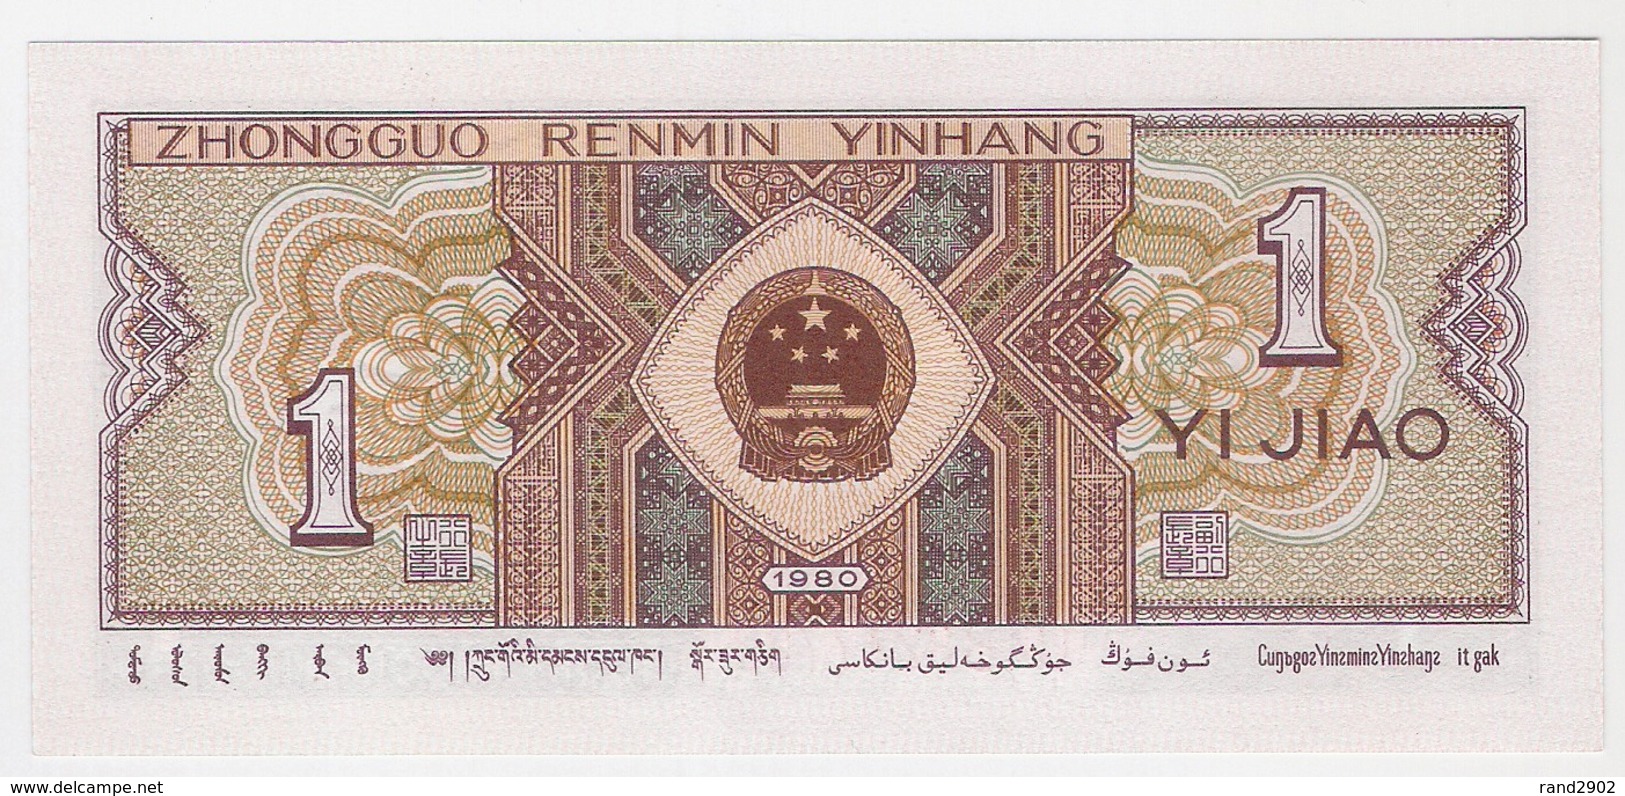 China 1 Jiao 1980 (1) P-881 UNC /007B/ - China